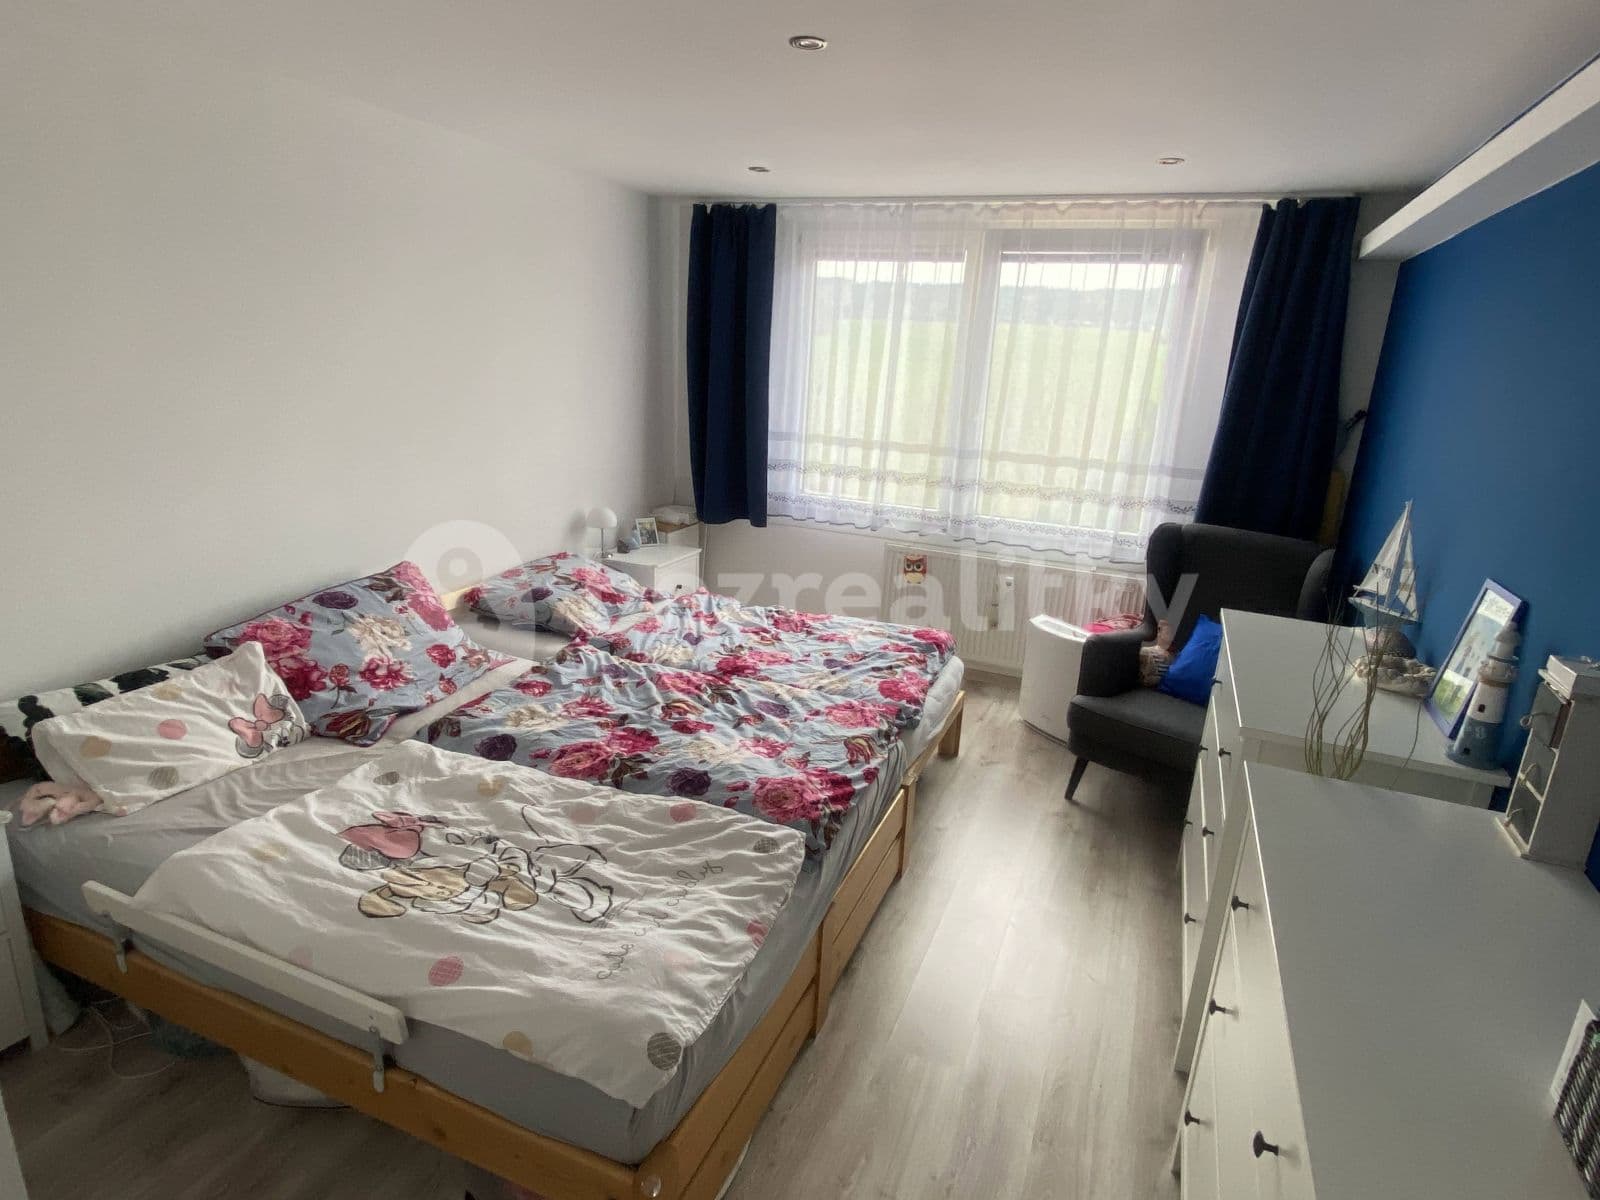 3 bedroom flat to rent, 80 m², Polní, Rokycany, Plzeňský Region